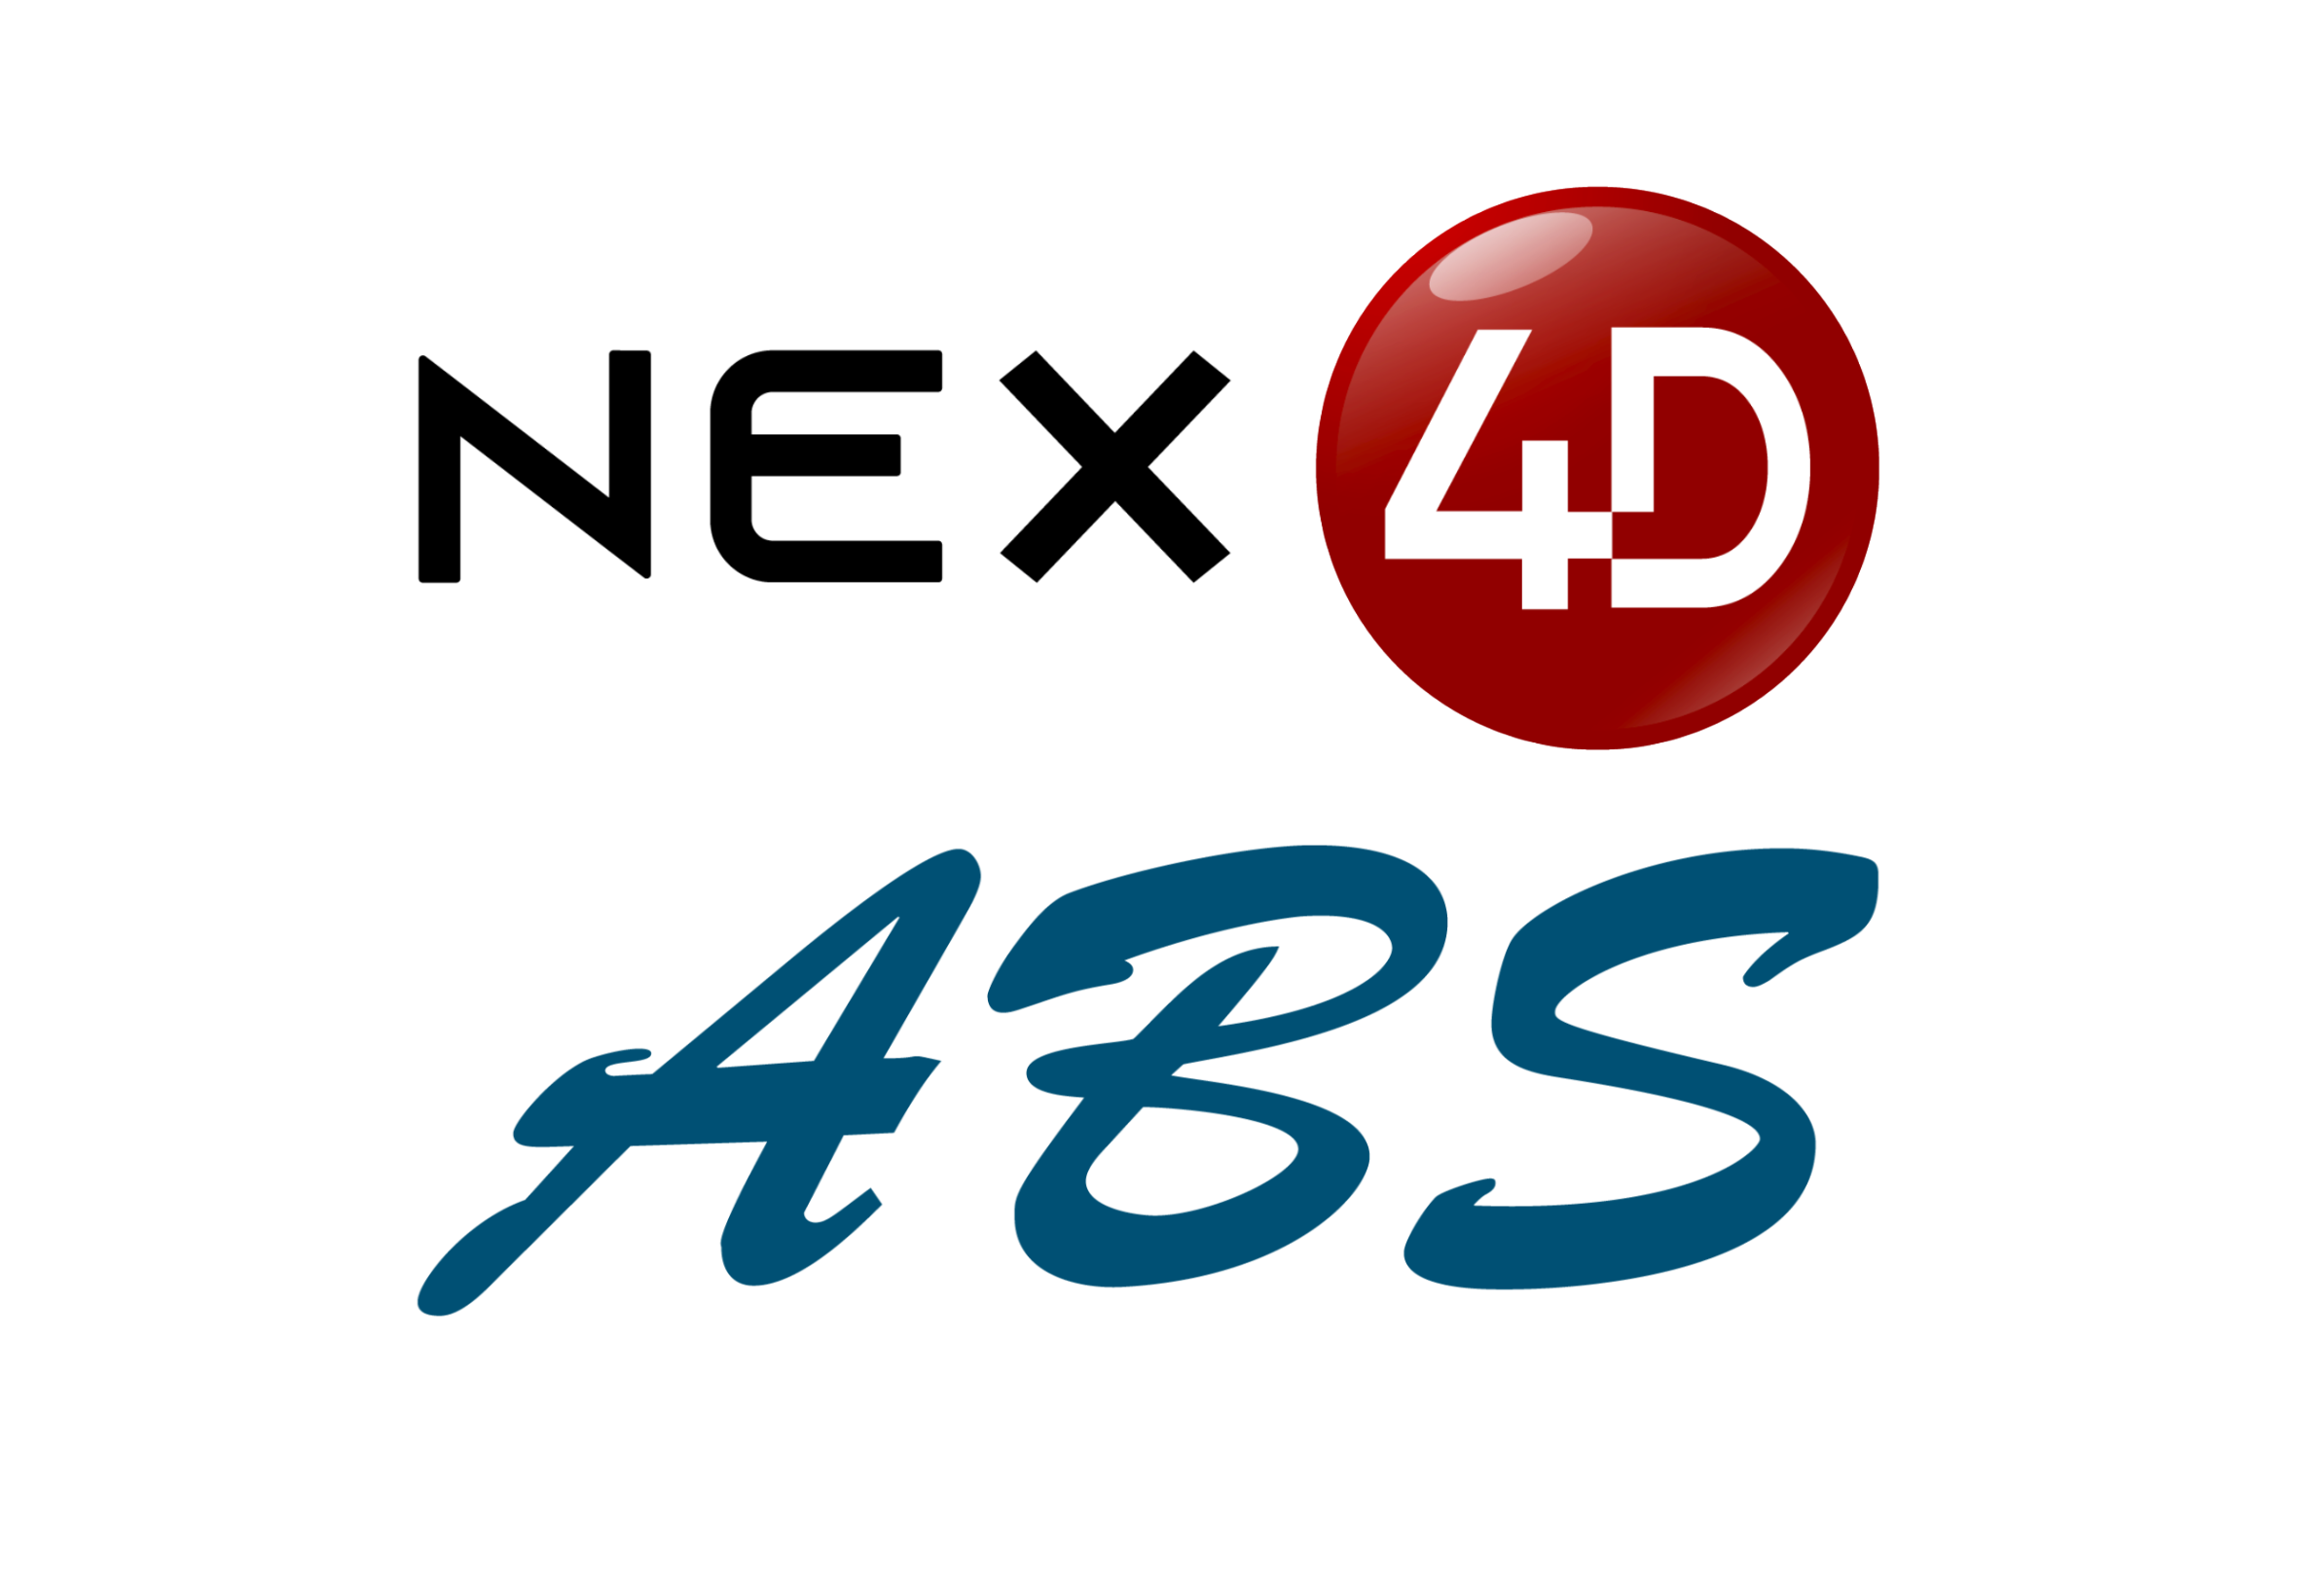 NEX4D & ABS4D - Lottery